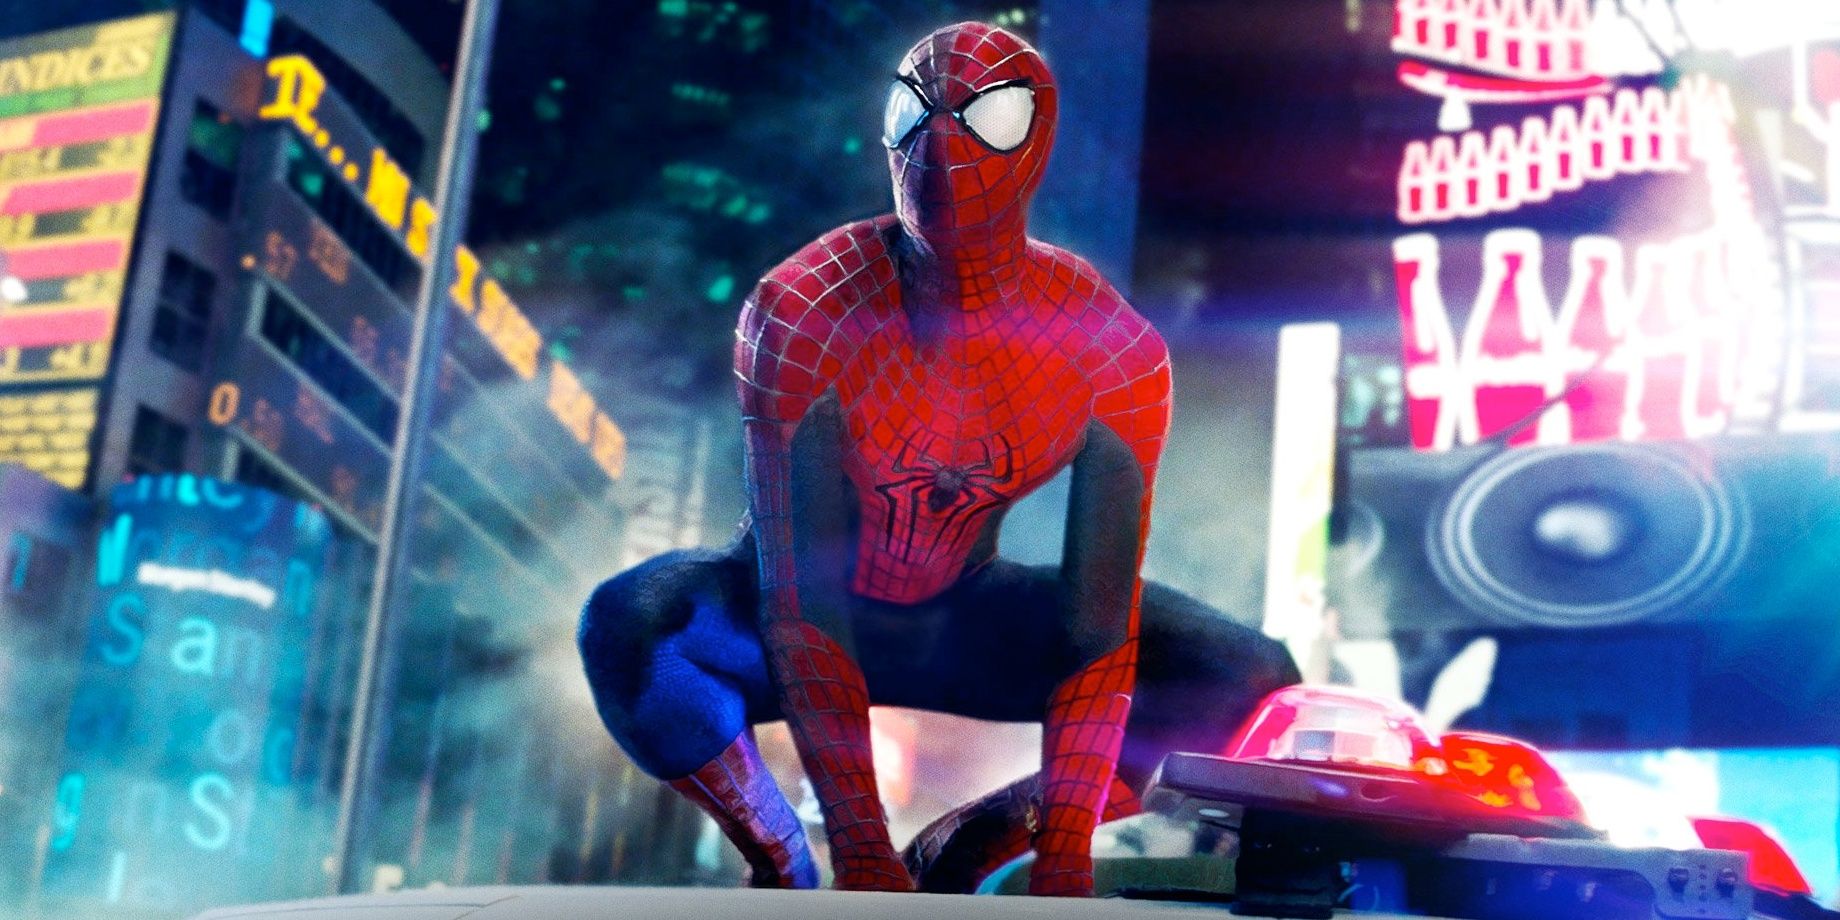 Spider-Man in The Amazing Spider-Man 2